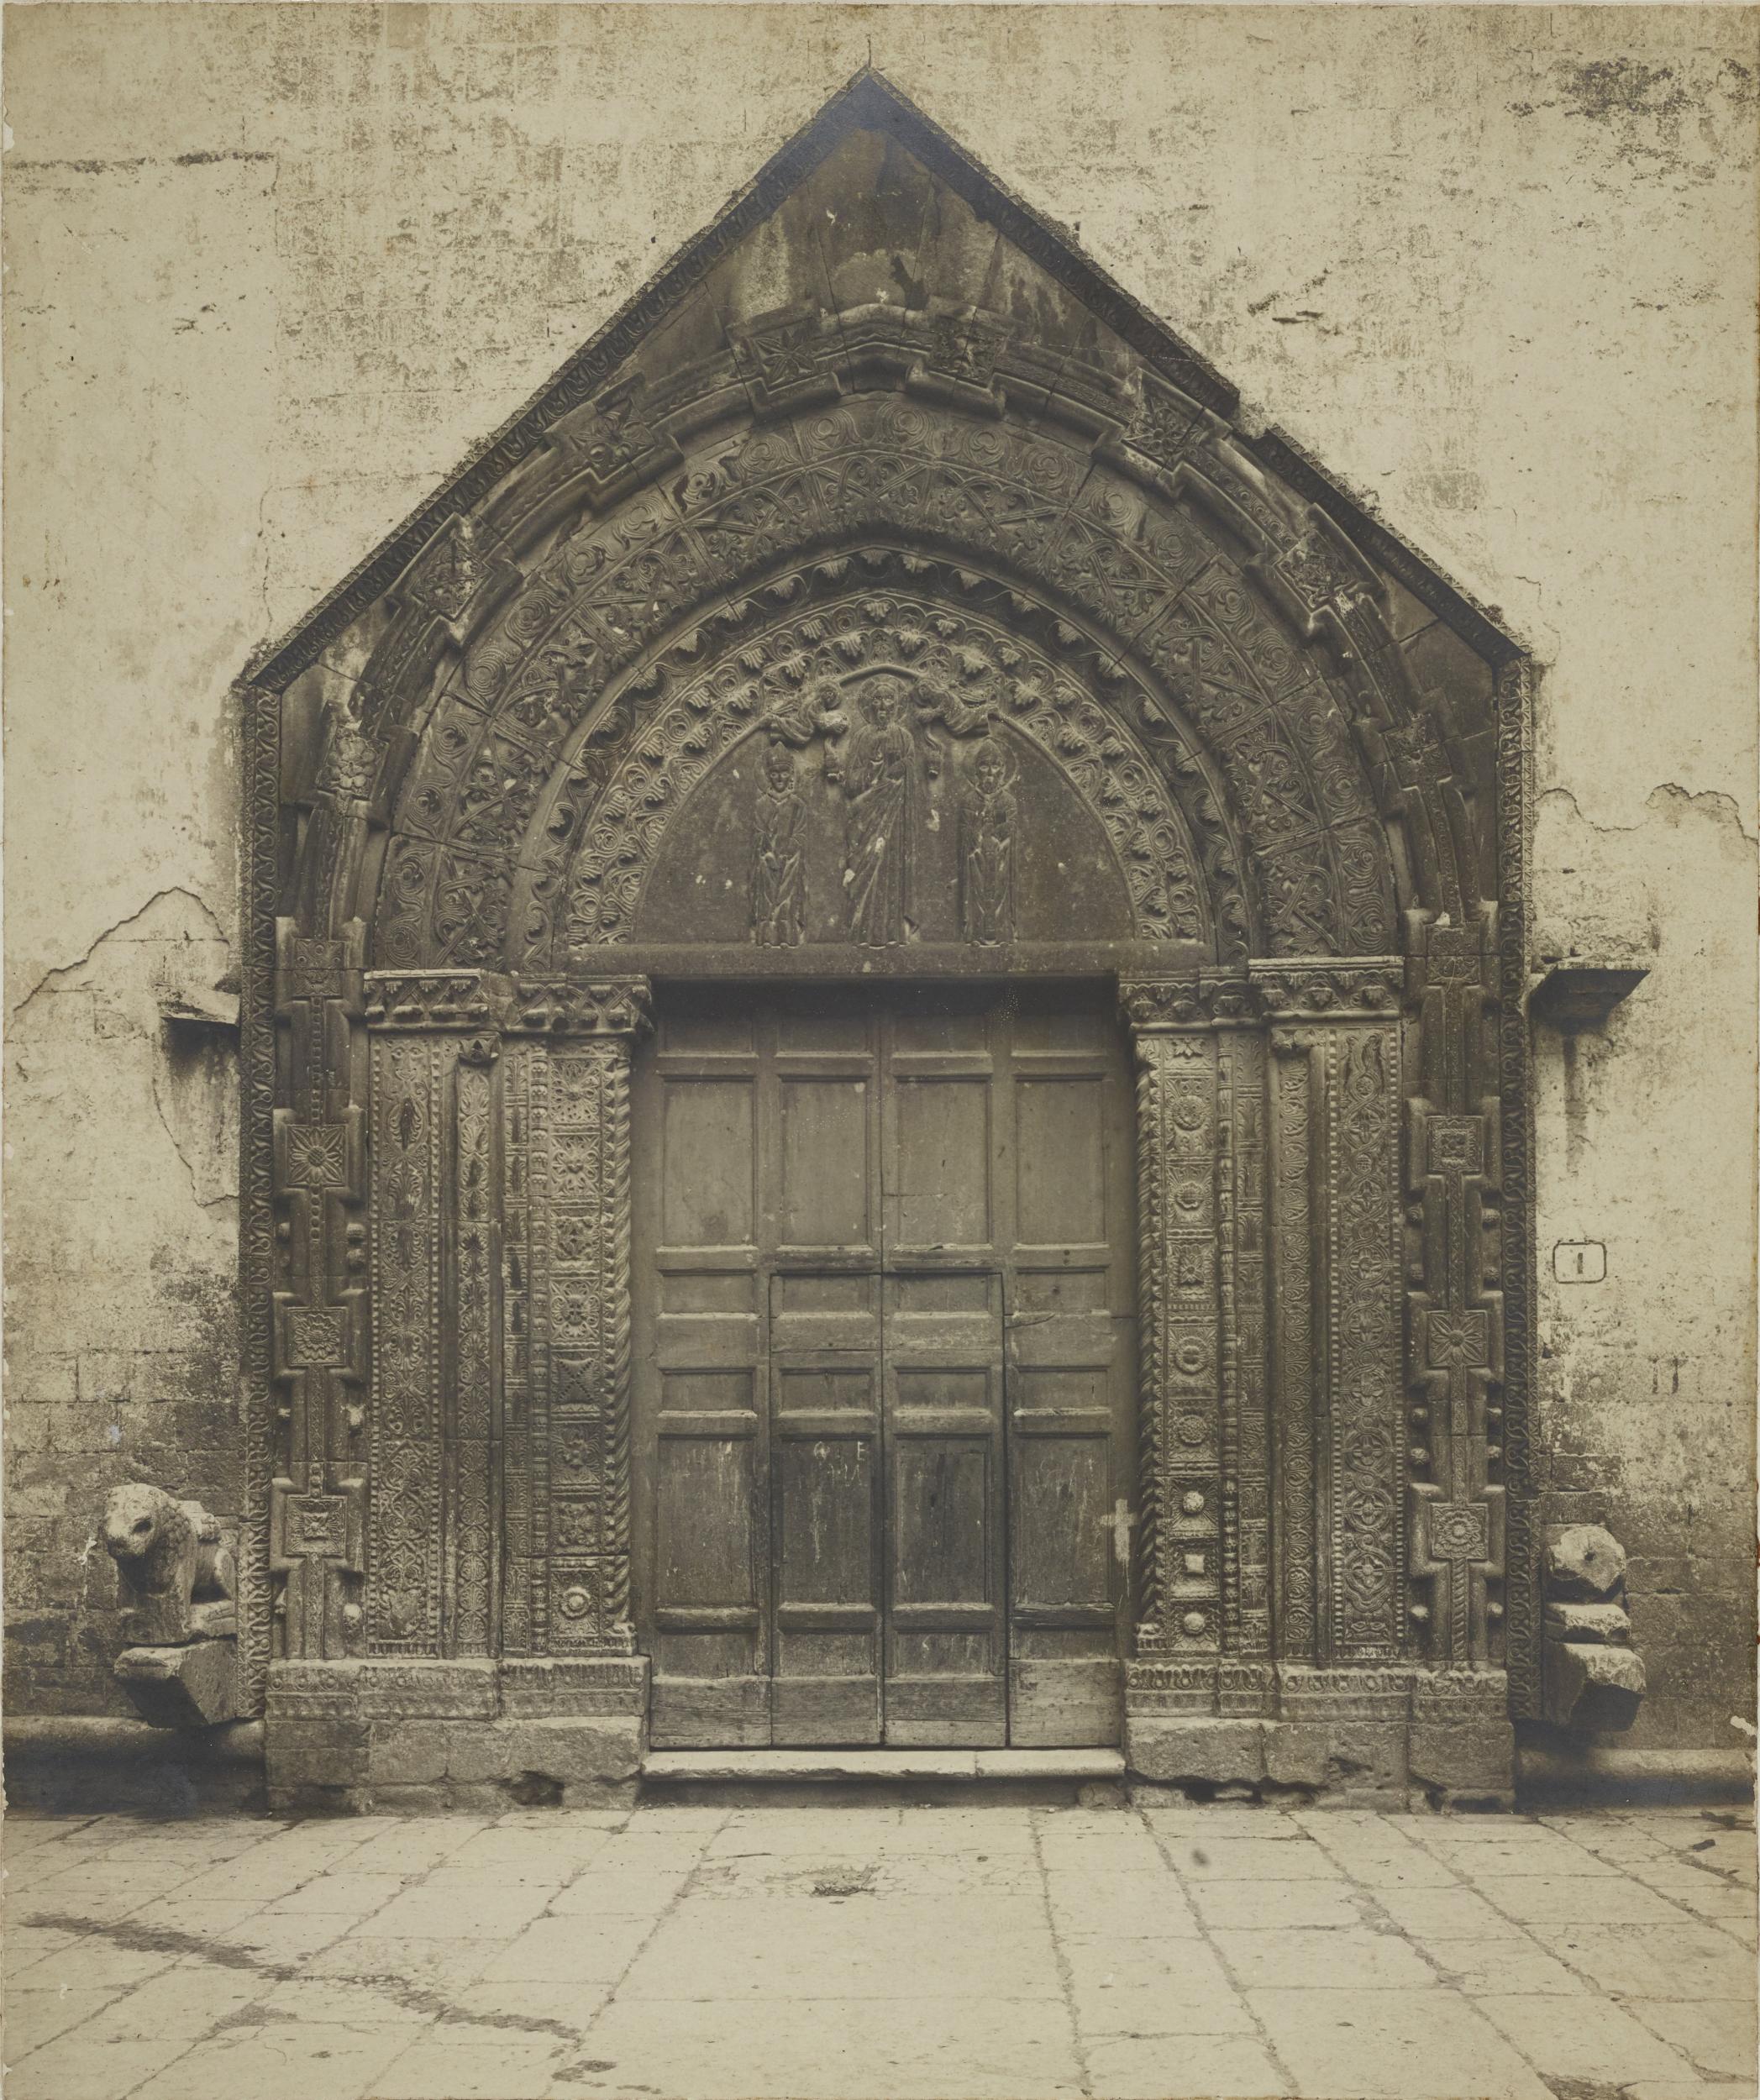 Fotografo non identificato, Andria - Chiesa di S. Agostino, portale, 1901-1925, gelatina ai sali d'argento/carta, MPI131842